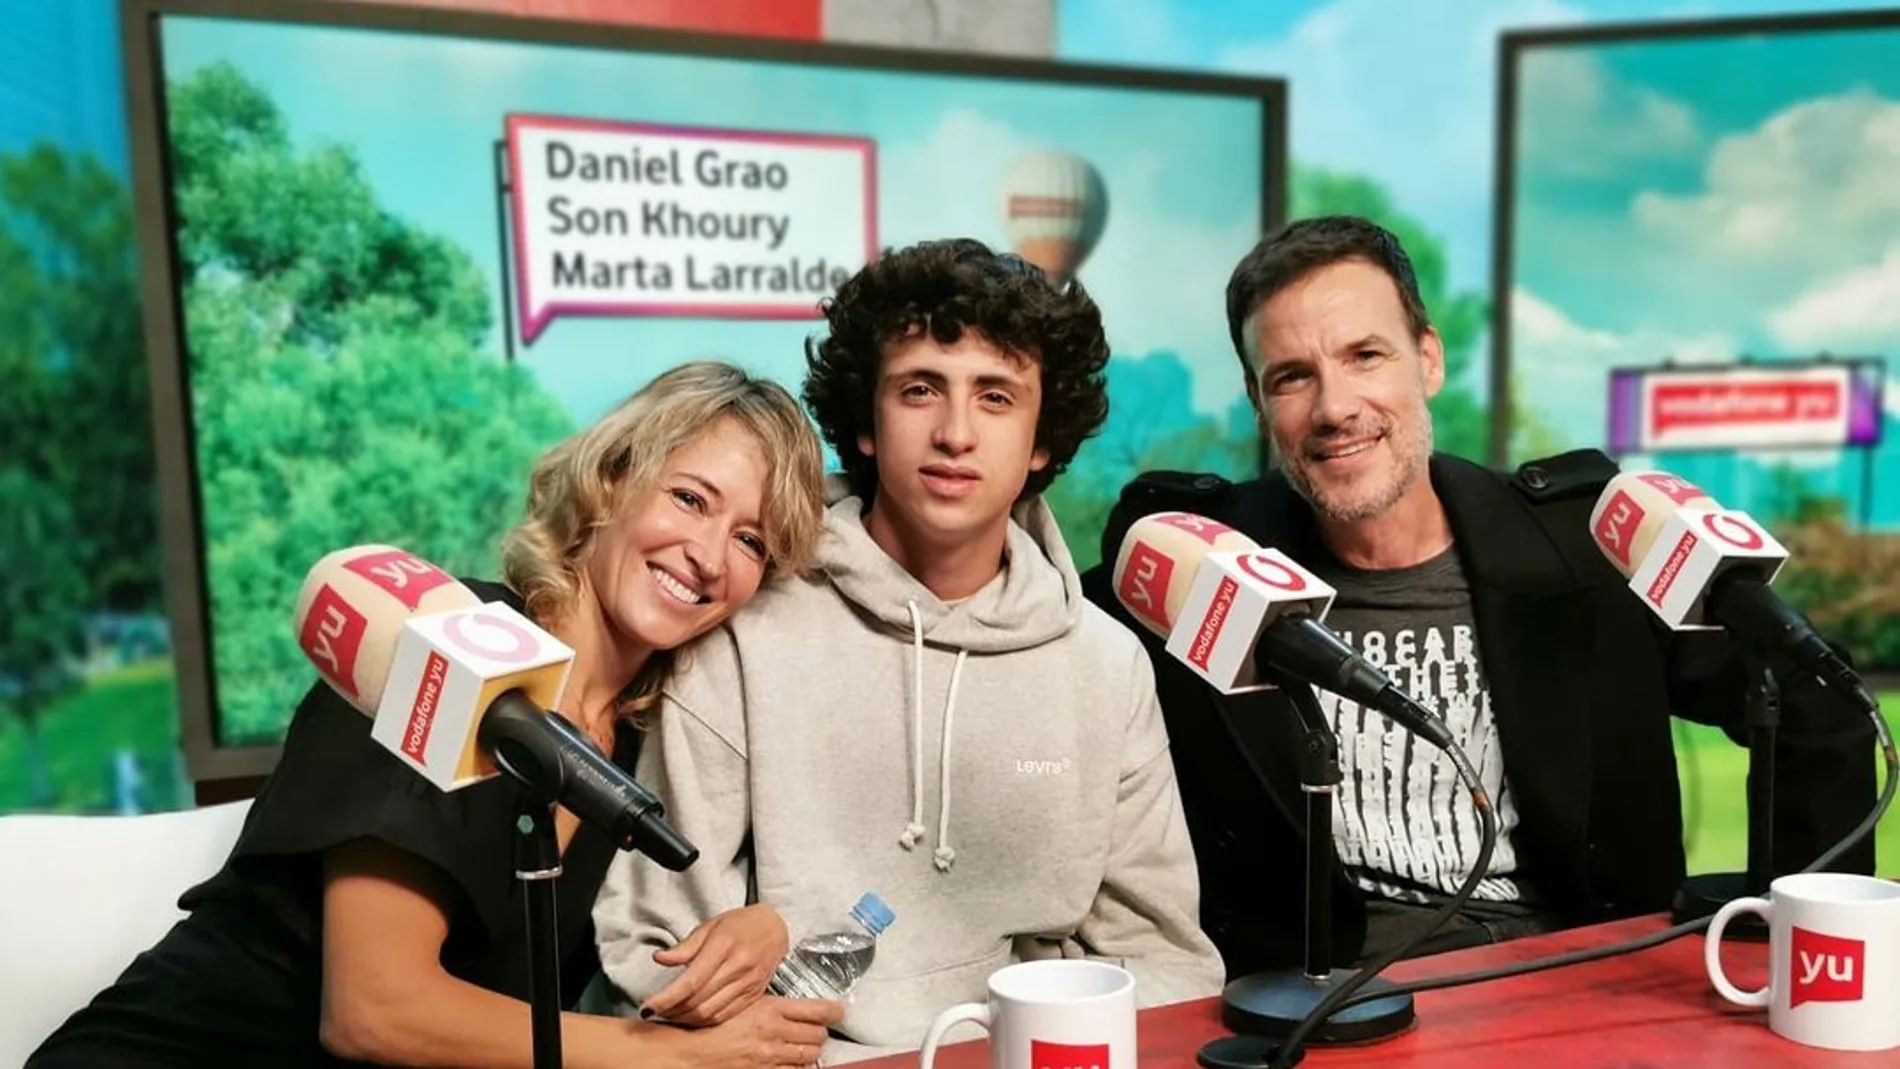 Daniel Grao, Marta Larralde y Son Khoury 